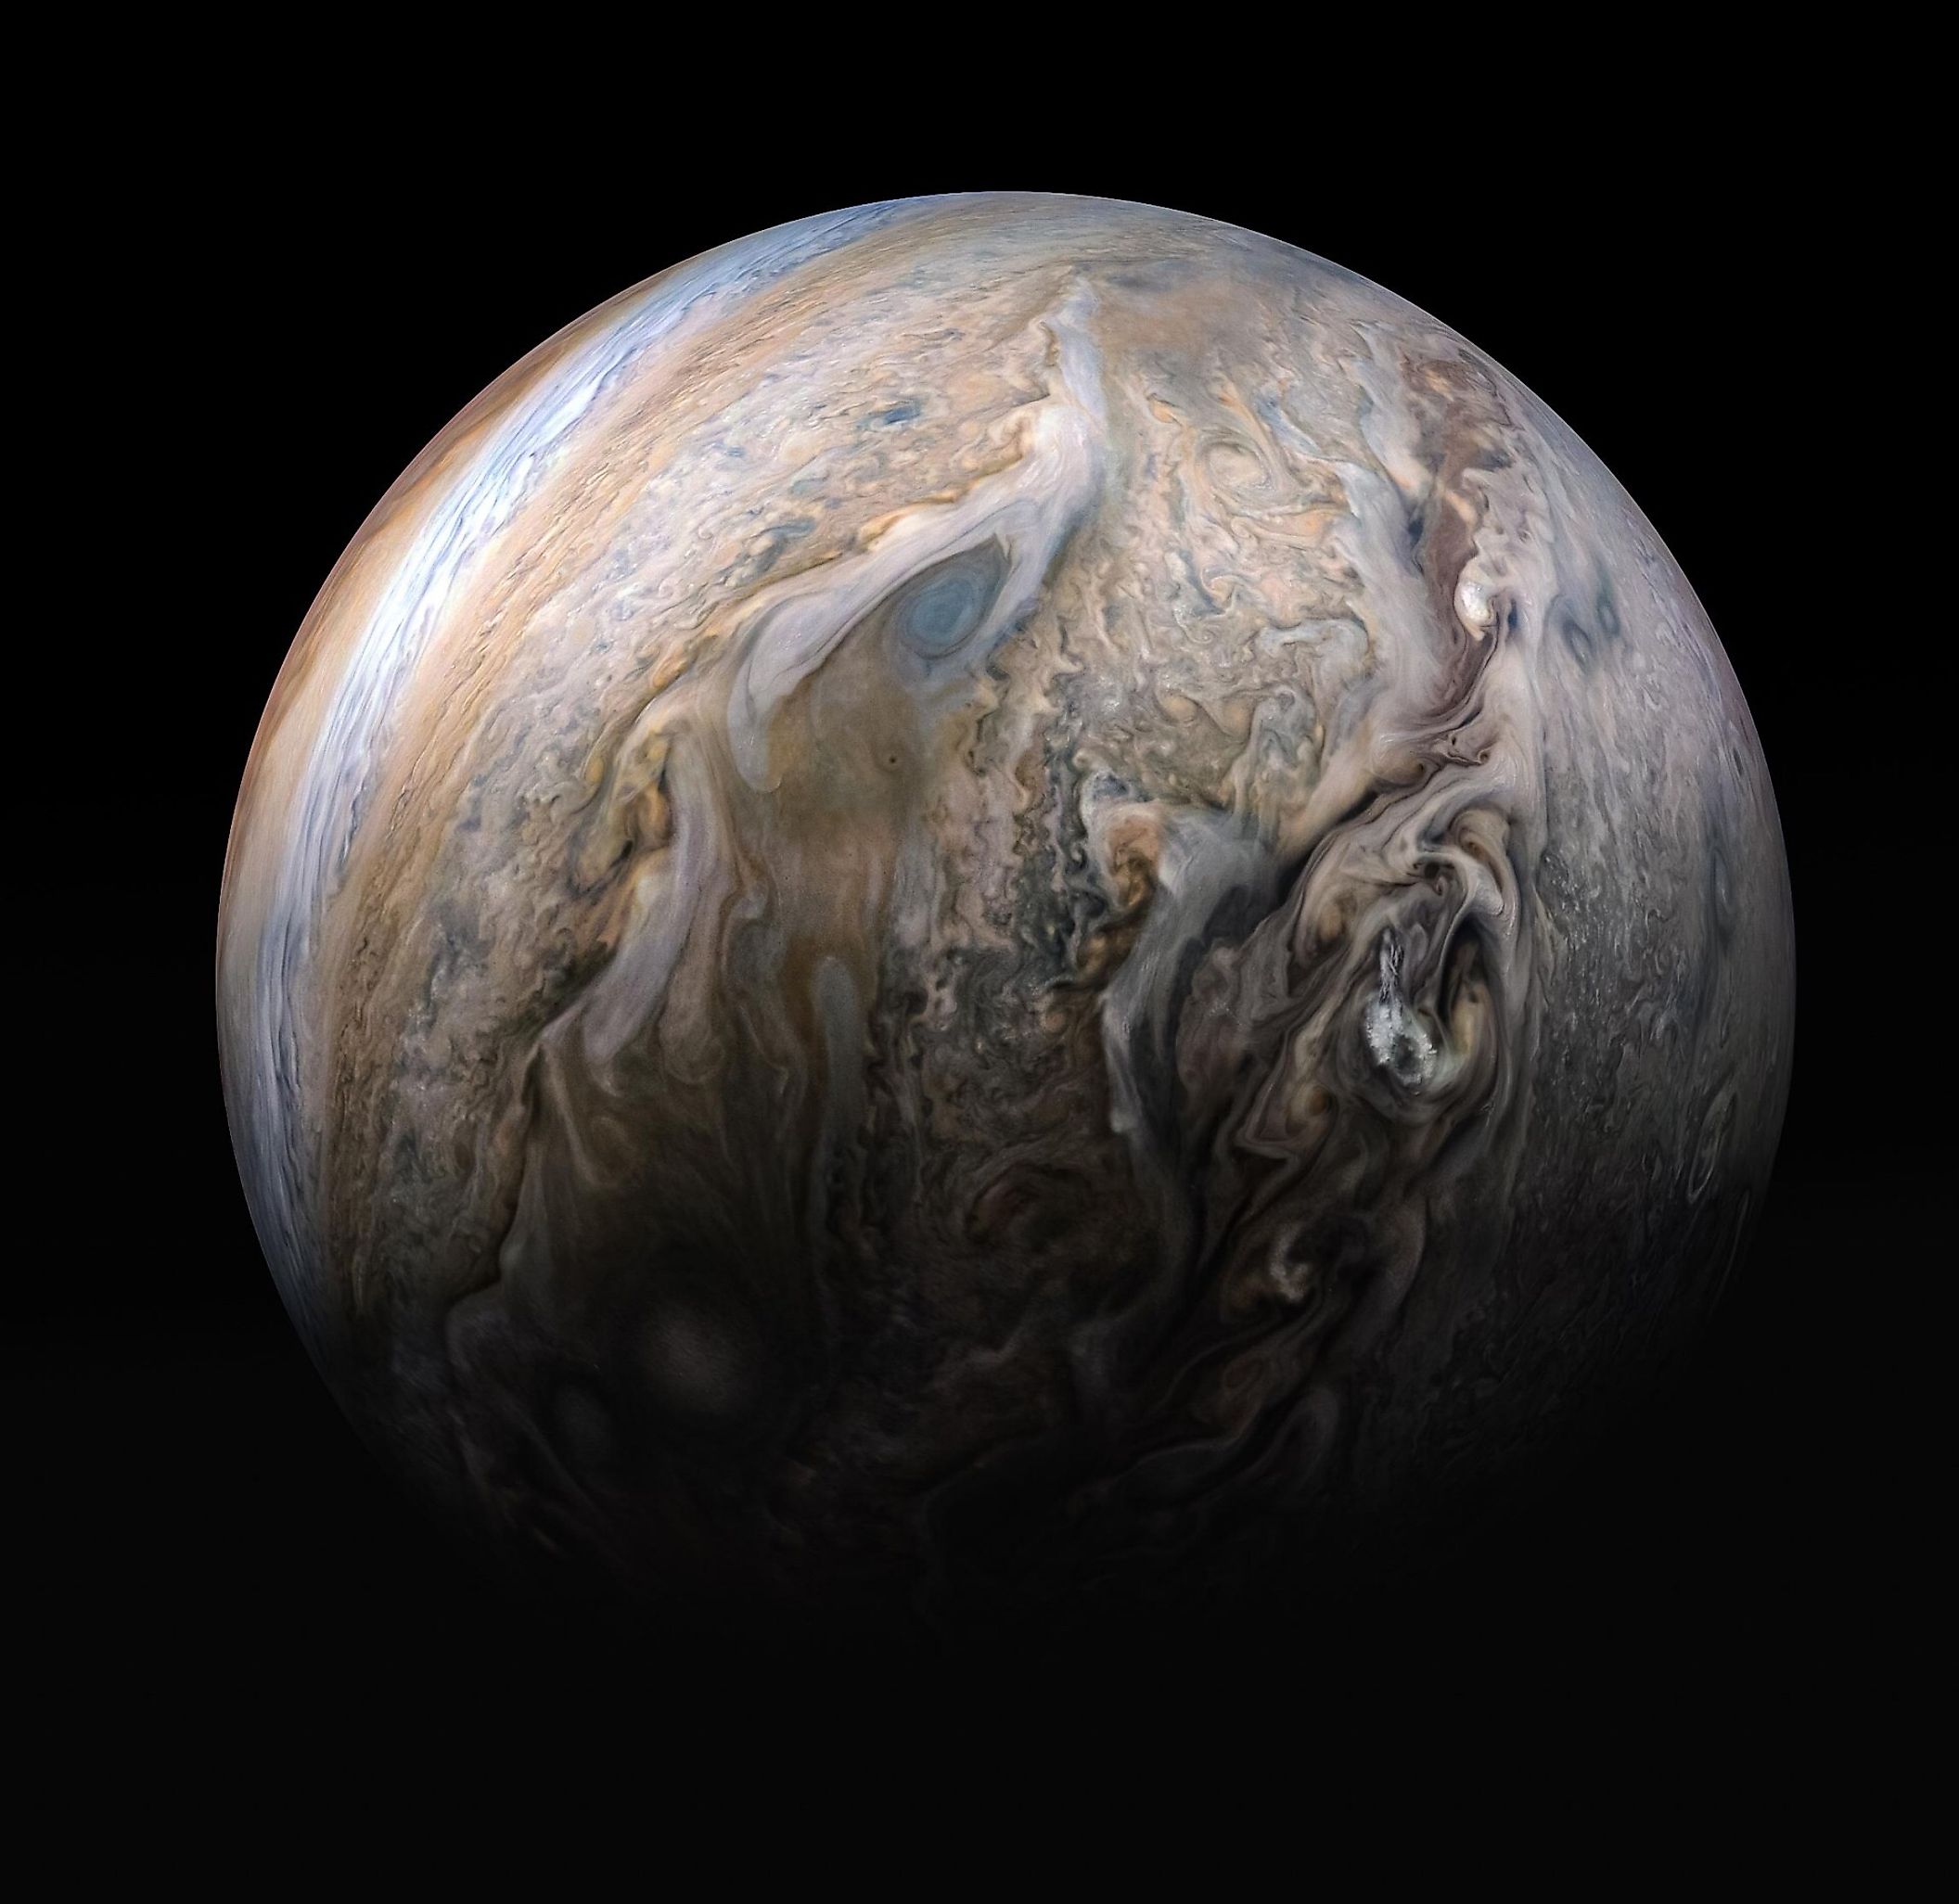 Image of Jupiter taken by the Juno spacecraft. Image credit: NASA/ESA